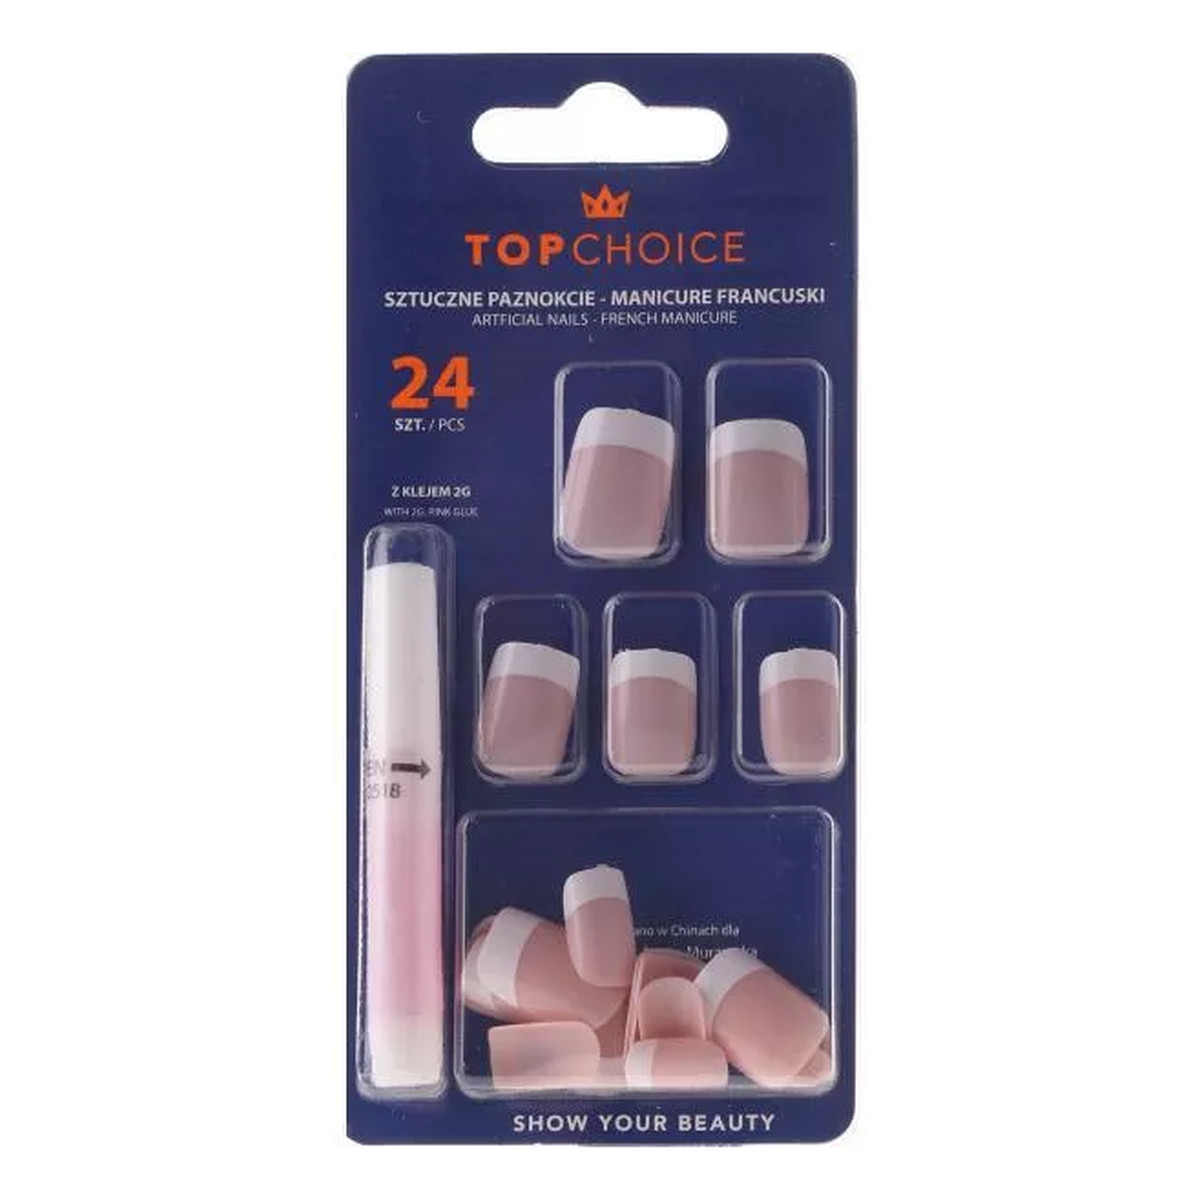 Top Choice French Manicure Sztuczne paznokcie 7866B